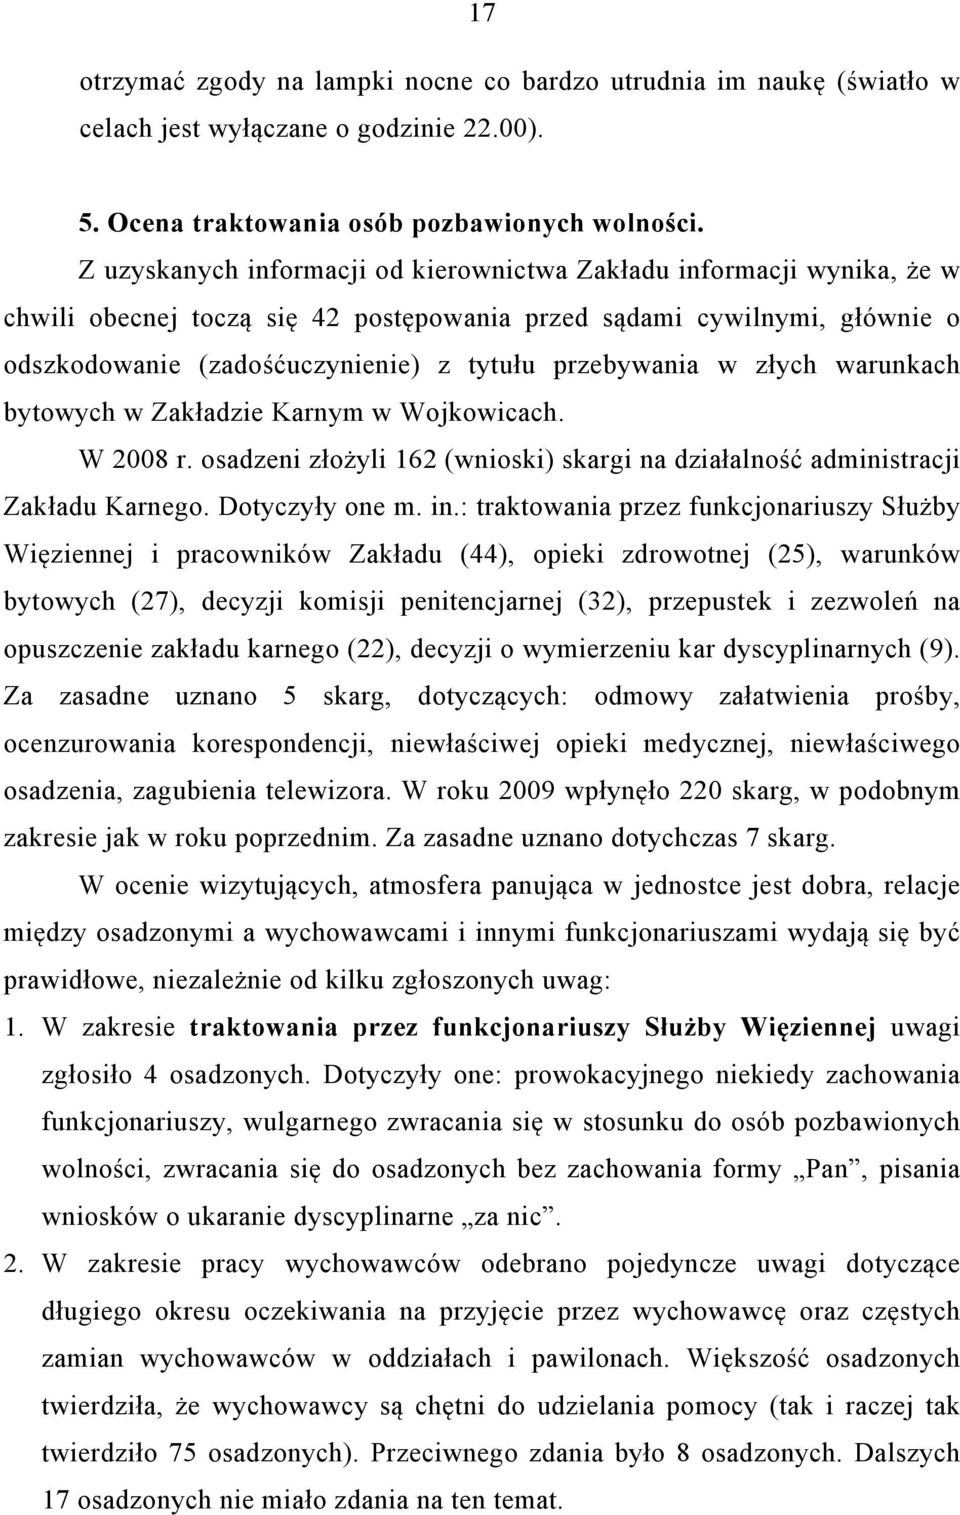 przebywania w złych warunkach bytowych w Zakładzie Karnym w Wojkowicach. W 2008 r. osadzeni złożyli 162 (wnioski) skargi na działalność administracji Zakładu Karnego. Dotyczyły one m. in.